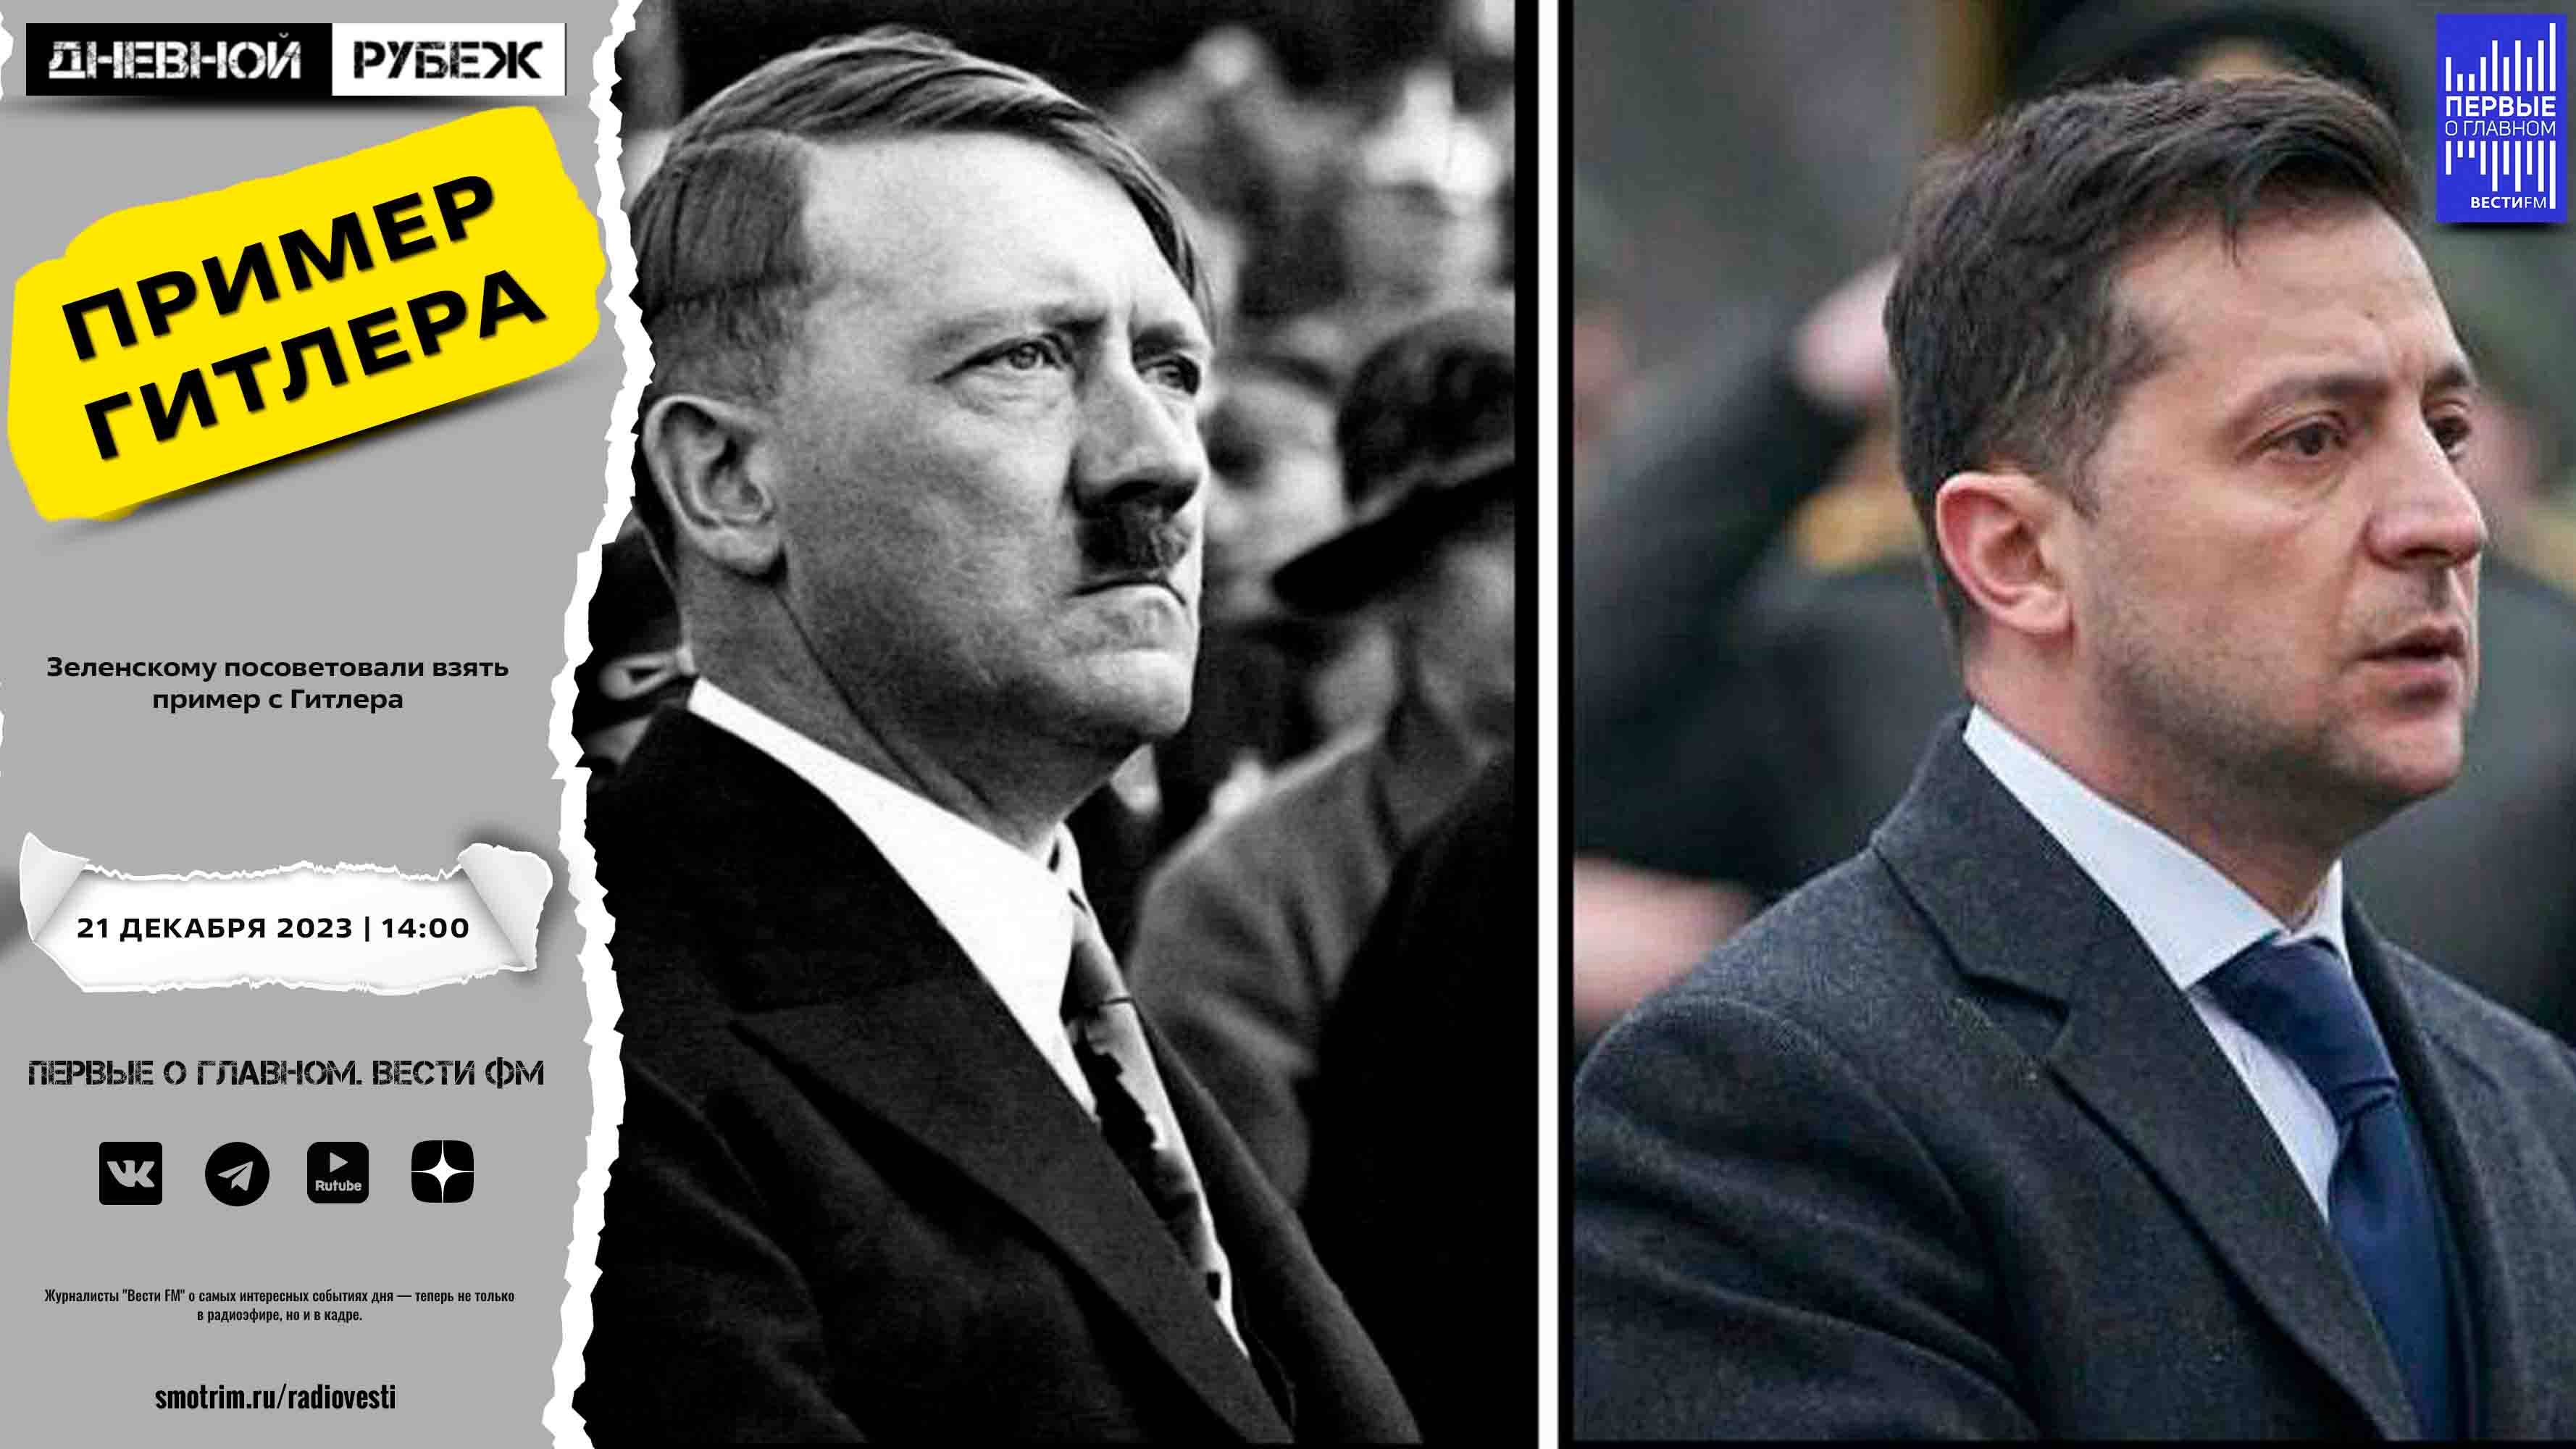 Зеленскому посоветовали взять пример с Гитлера.